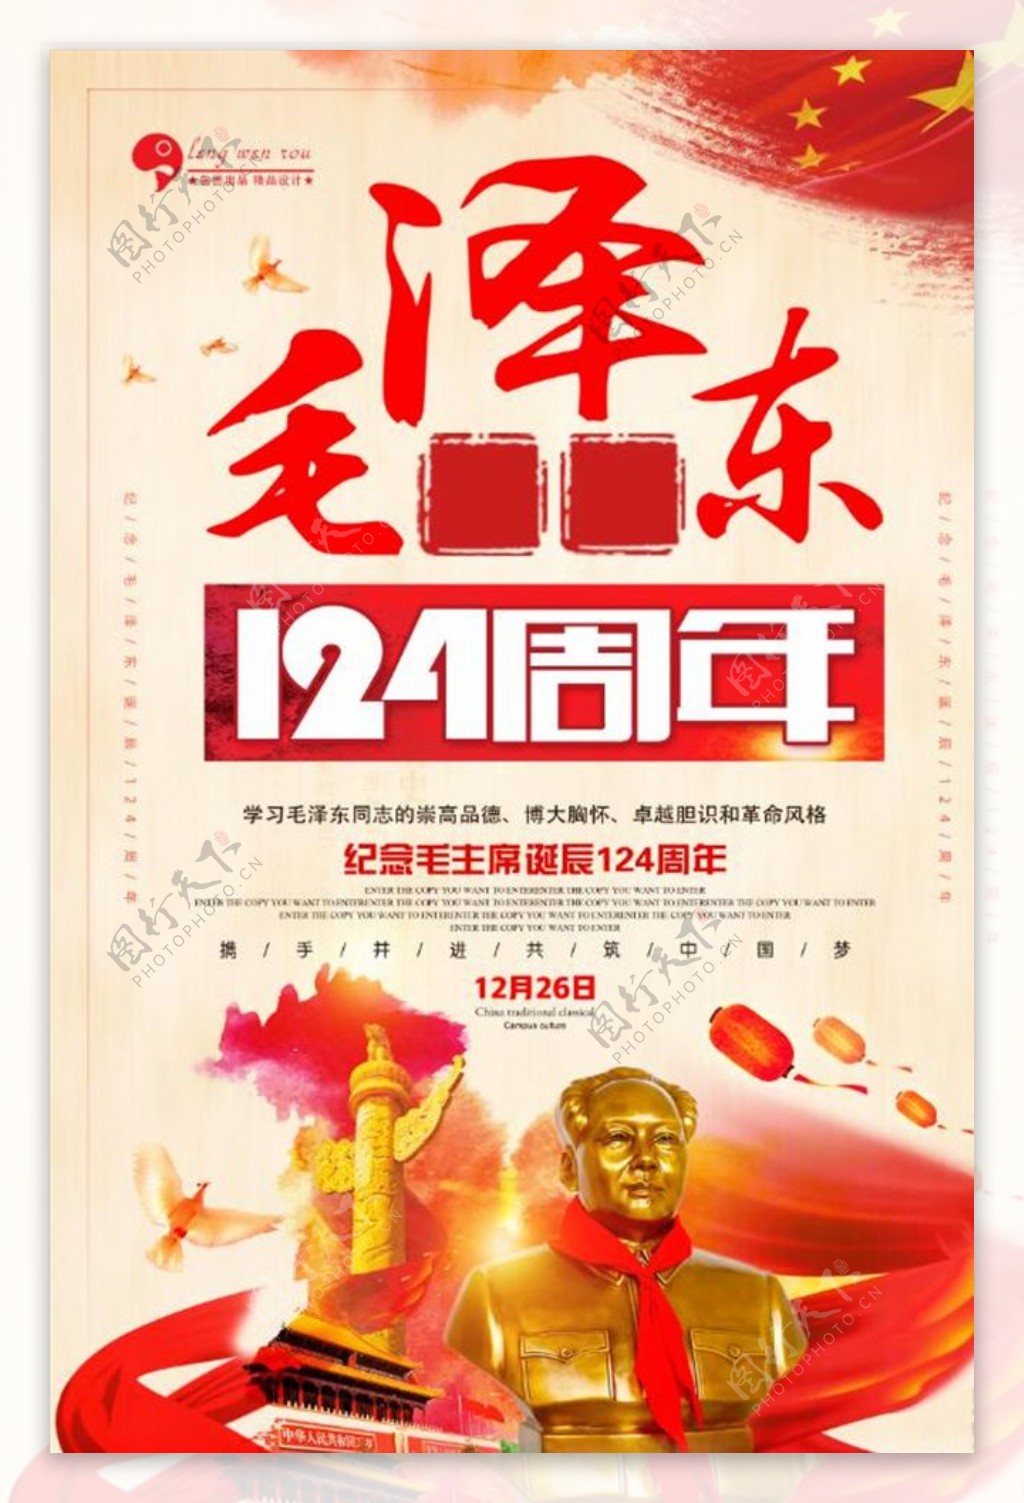 毛泽东诞辰日海报